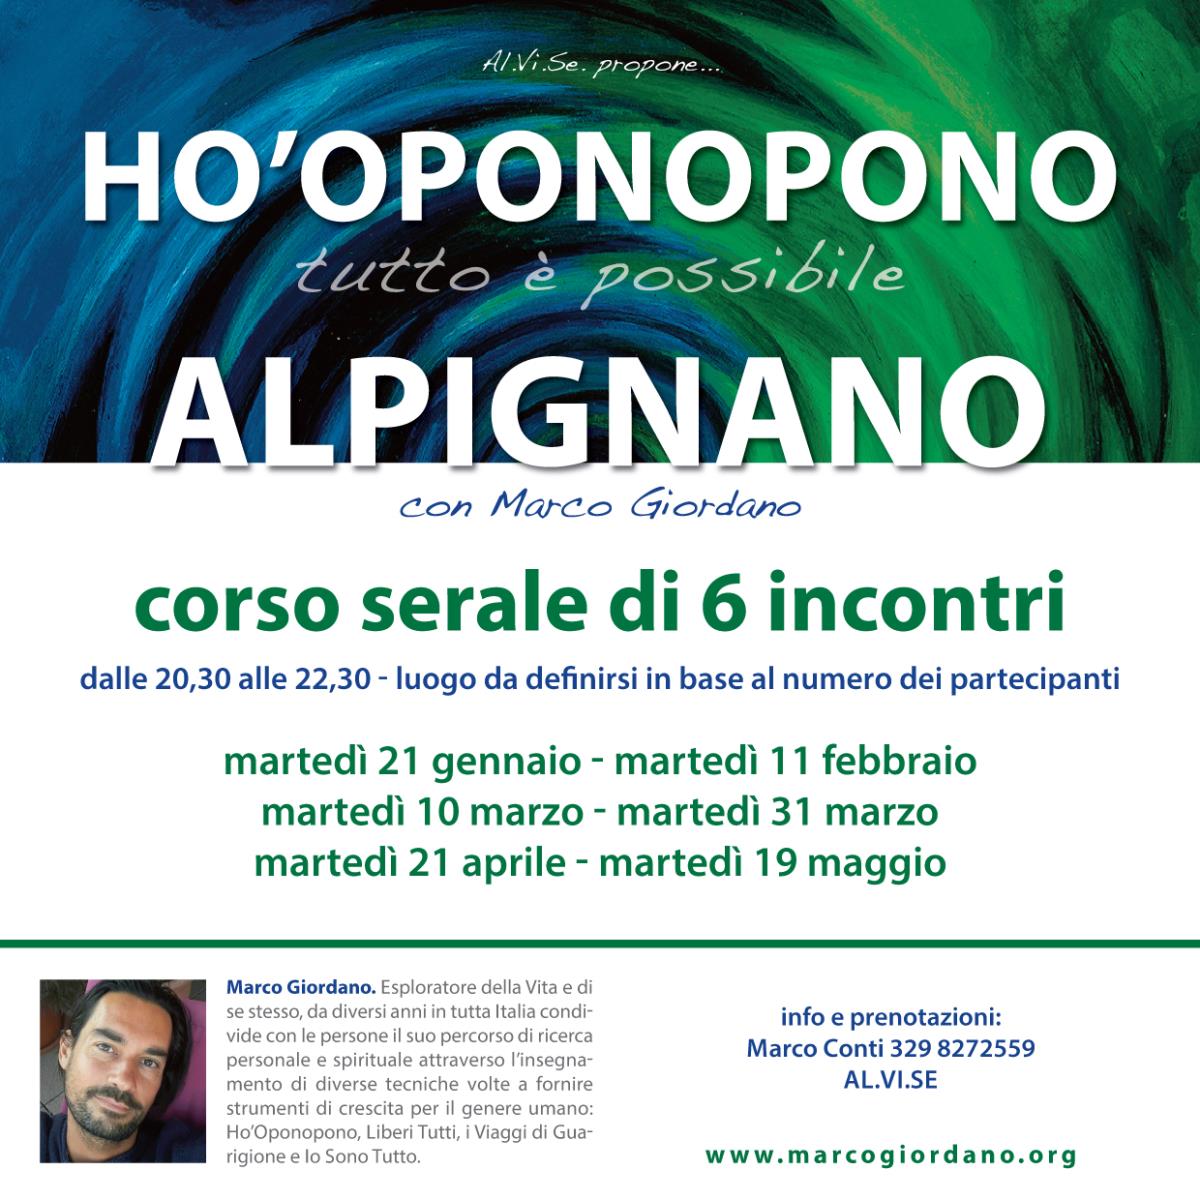 Corso serale - III incontro <b>HO'OPONOPONO</b> marted 10 marzo <b>ALPIGNANO (TO)